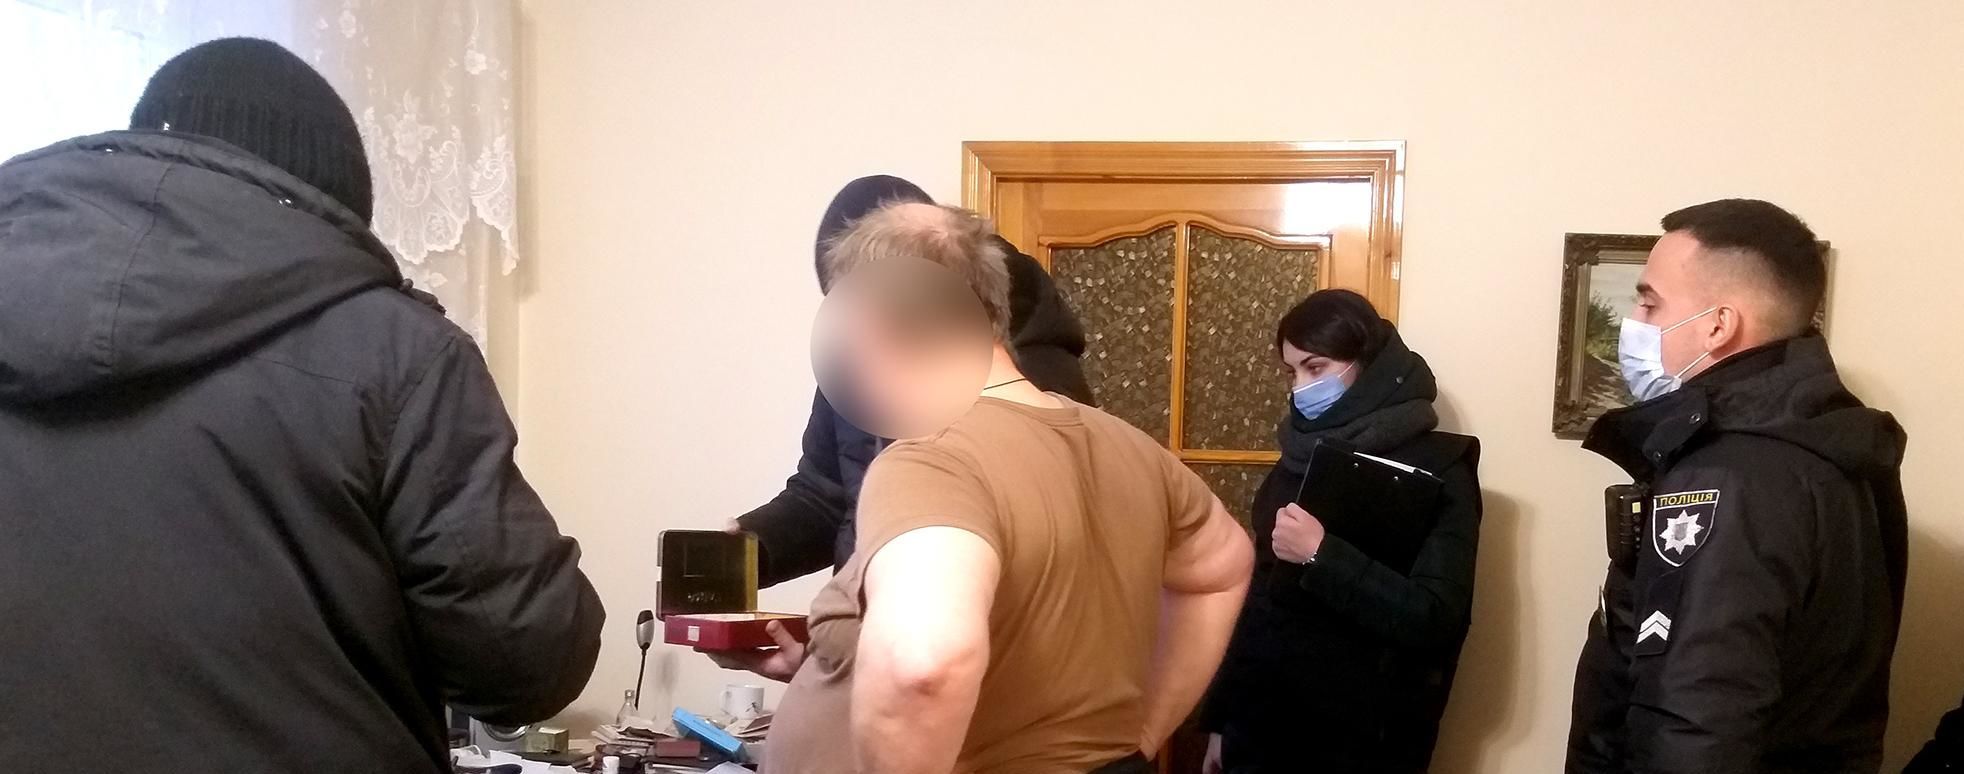 Распространяли детское порно в Сети: в Николаевской области задержали троих мужчин (видео)